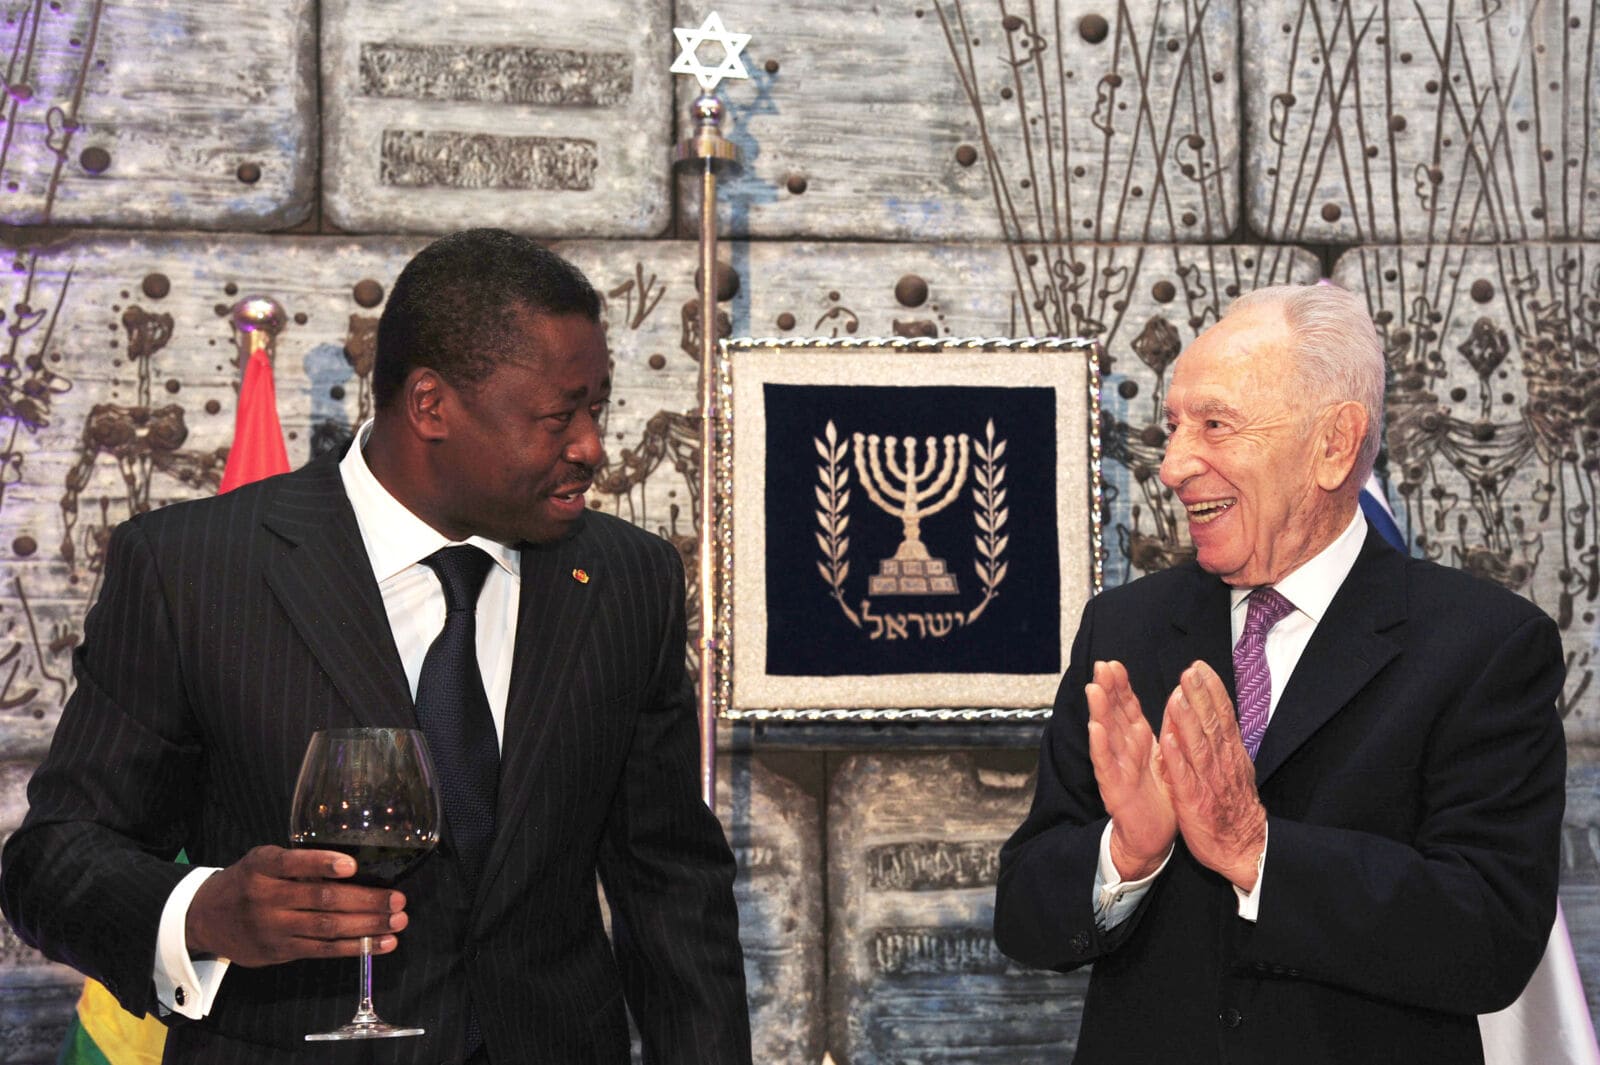 נשיא טוגו פורו גנאסינגבה מרים כוסית עם הנשיא שמעון פרס, בית הנשיא בירושלים, 28.11.2012 (צילום: קובי גדעון, לע"מ)